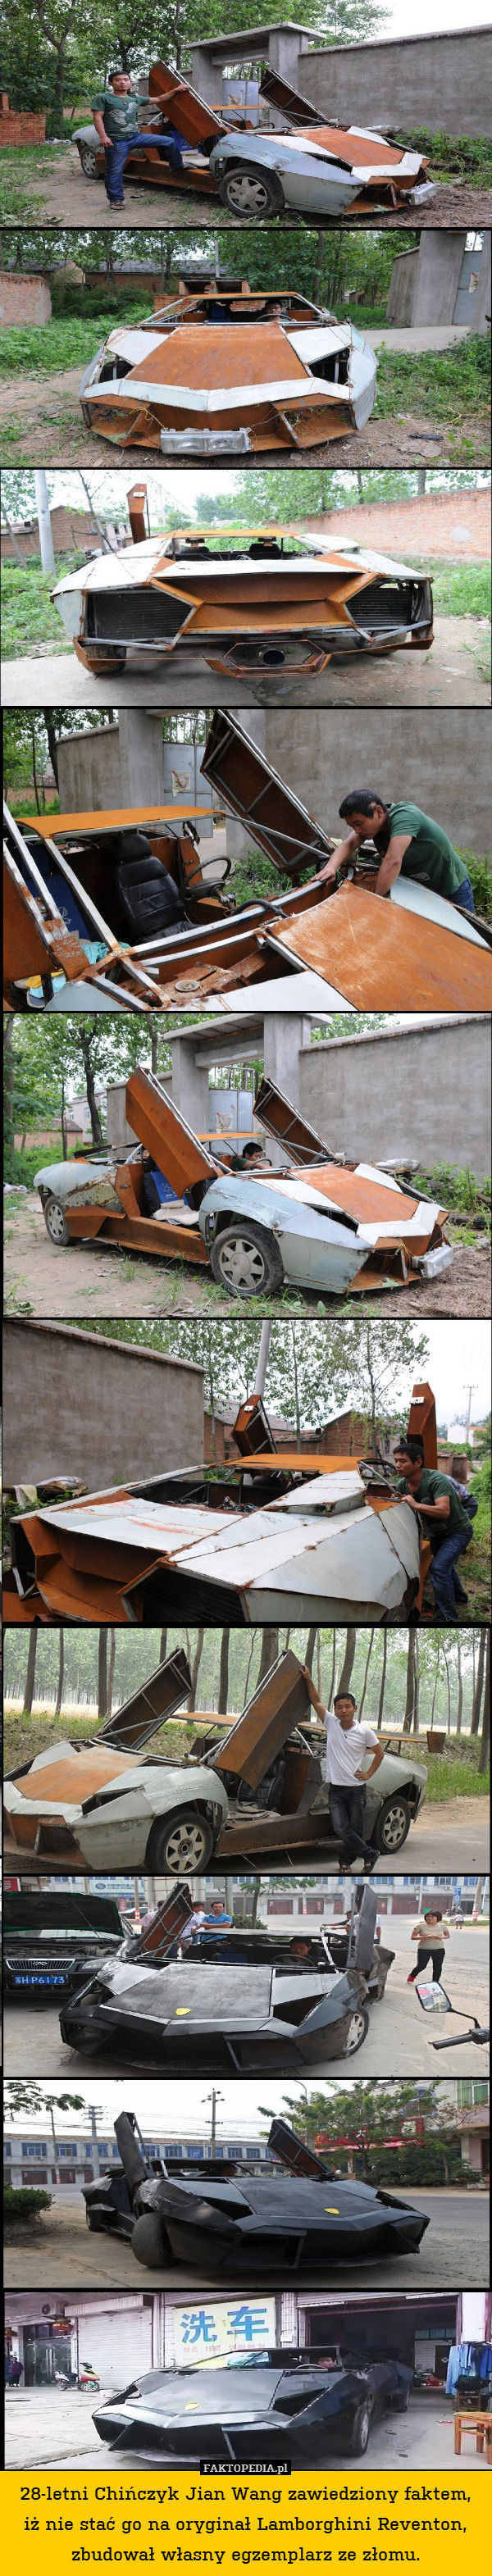 28-letni Chińczyk Jian Wang zawiedziony faktem, iż nie stać go na oryginał Lamborghini Reventon, zbudował własny egzemplarz ze złomu. 